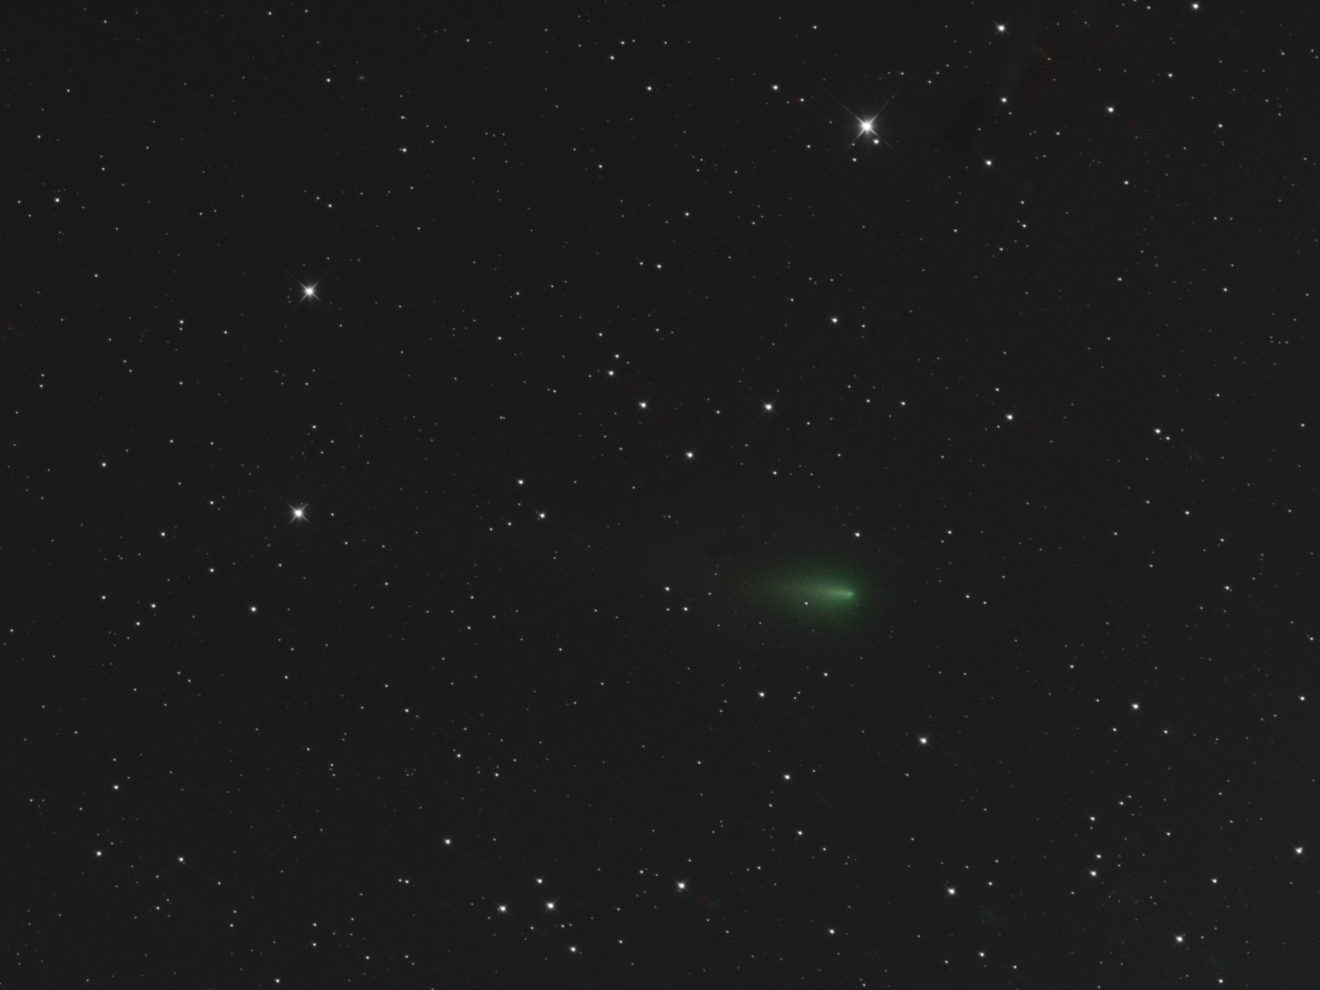 Komeet Atlas (C/2019 Y4) valt ècht uit elkaar